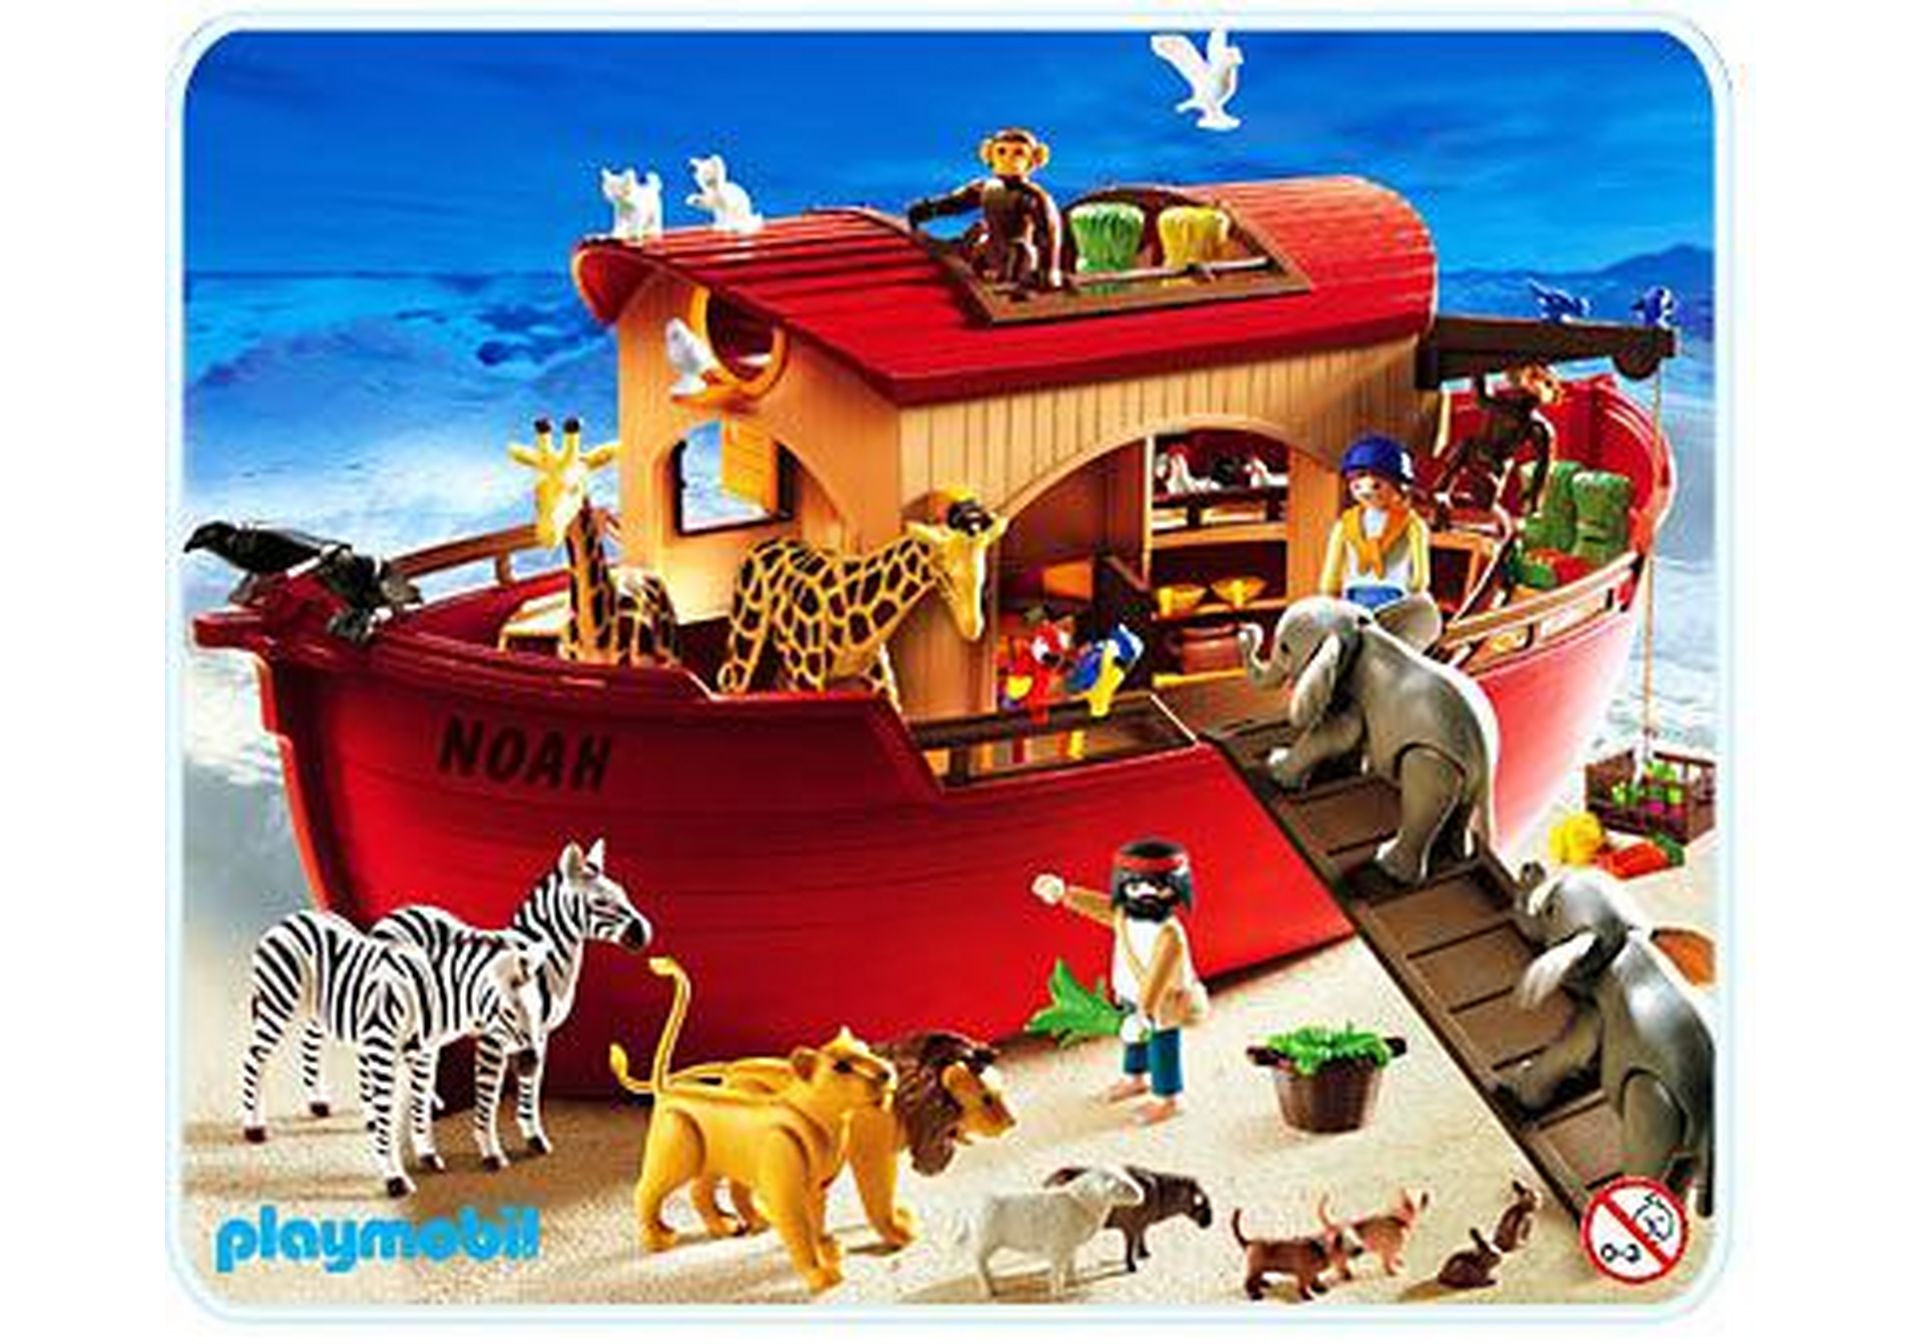 animaux, bateau sympa piece arche de noé 3255  playmobil 0441 